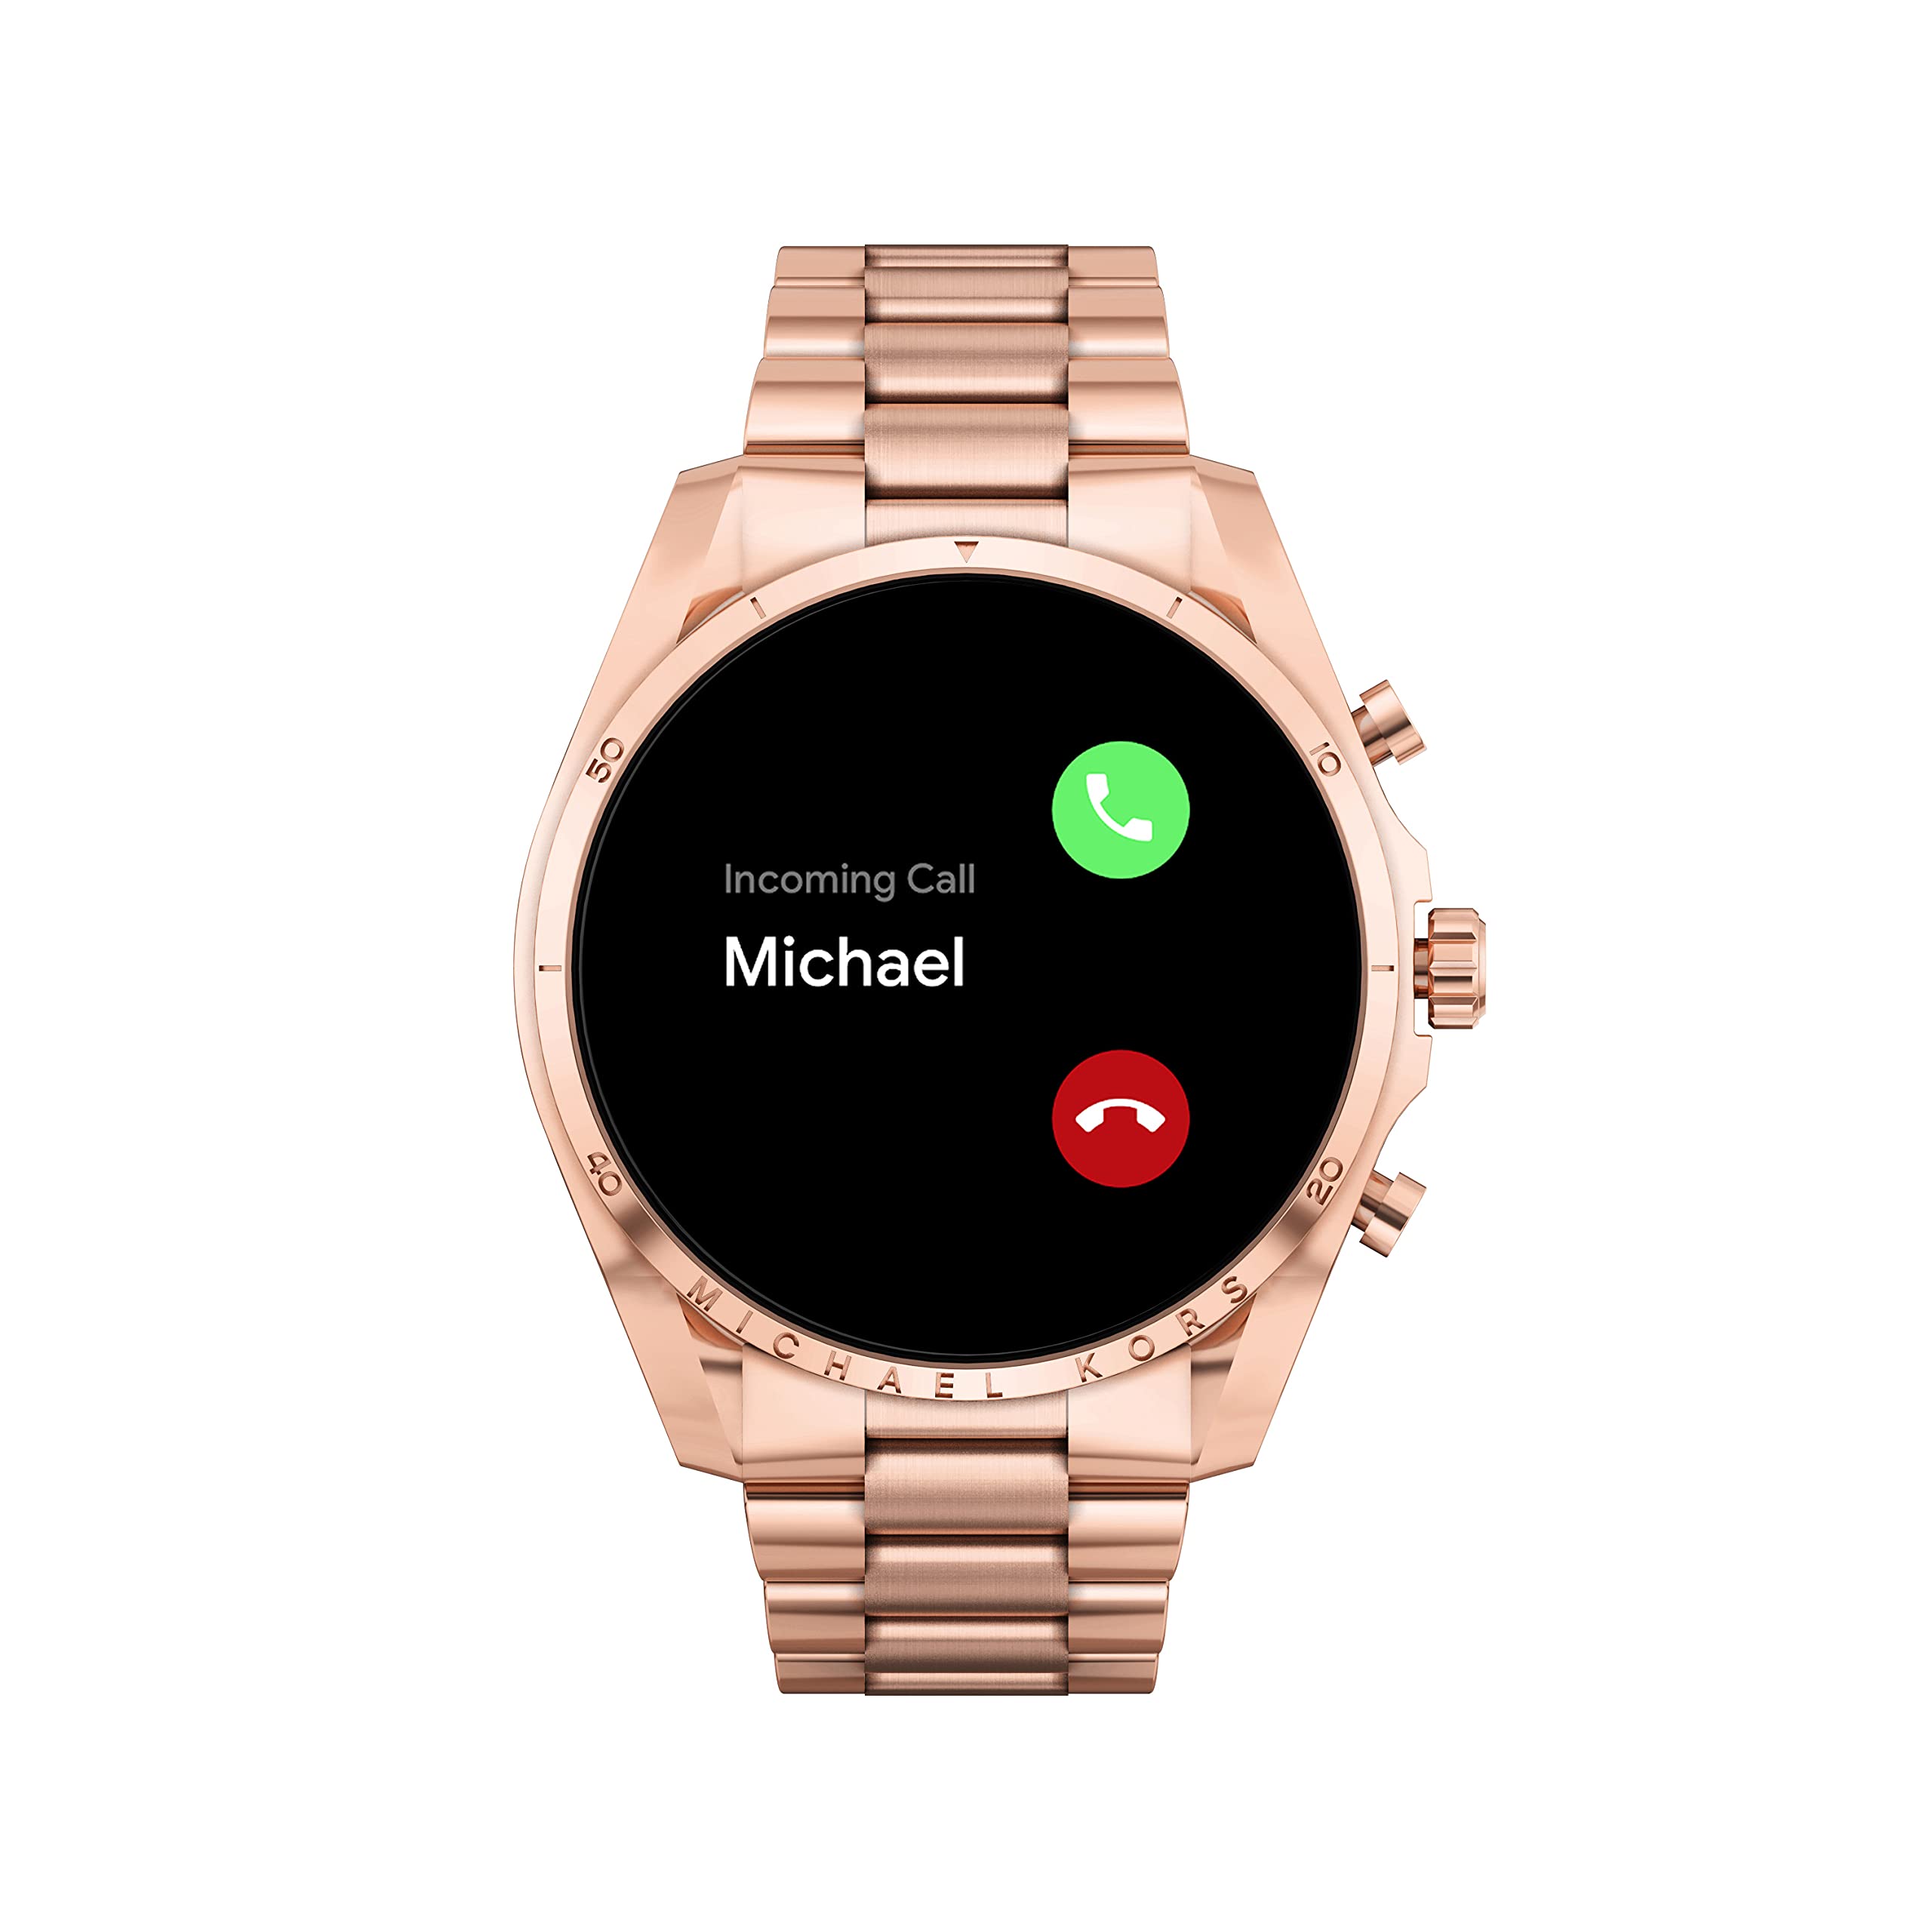 Đồng hồ thông minh Fossil Michael Kors chính thức có mặt tại PNJ Watch